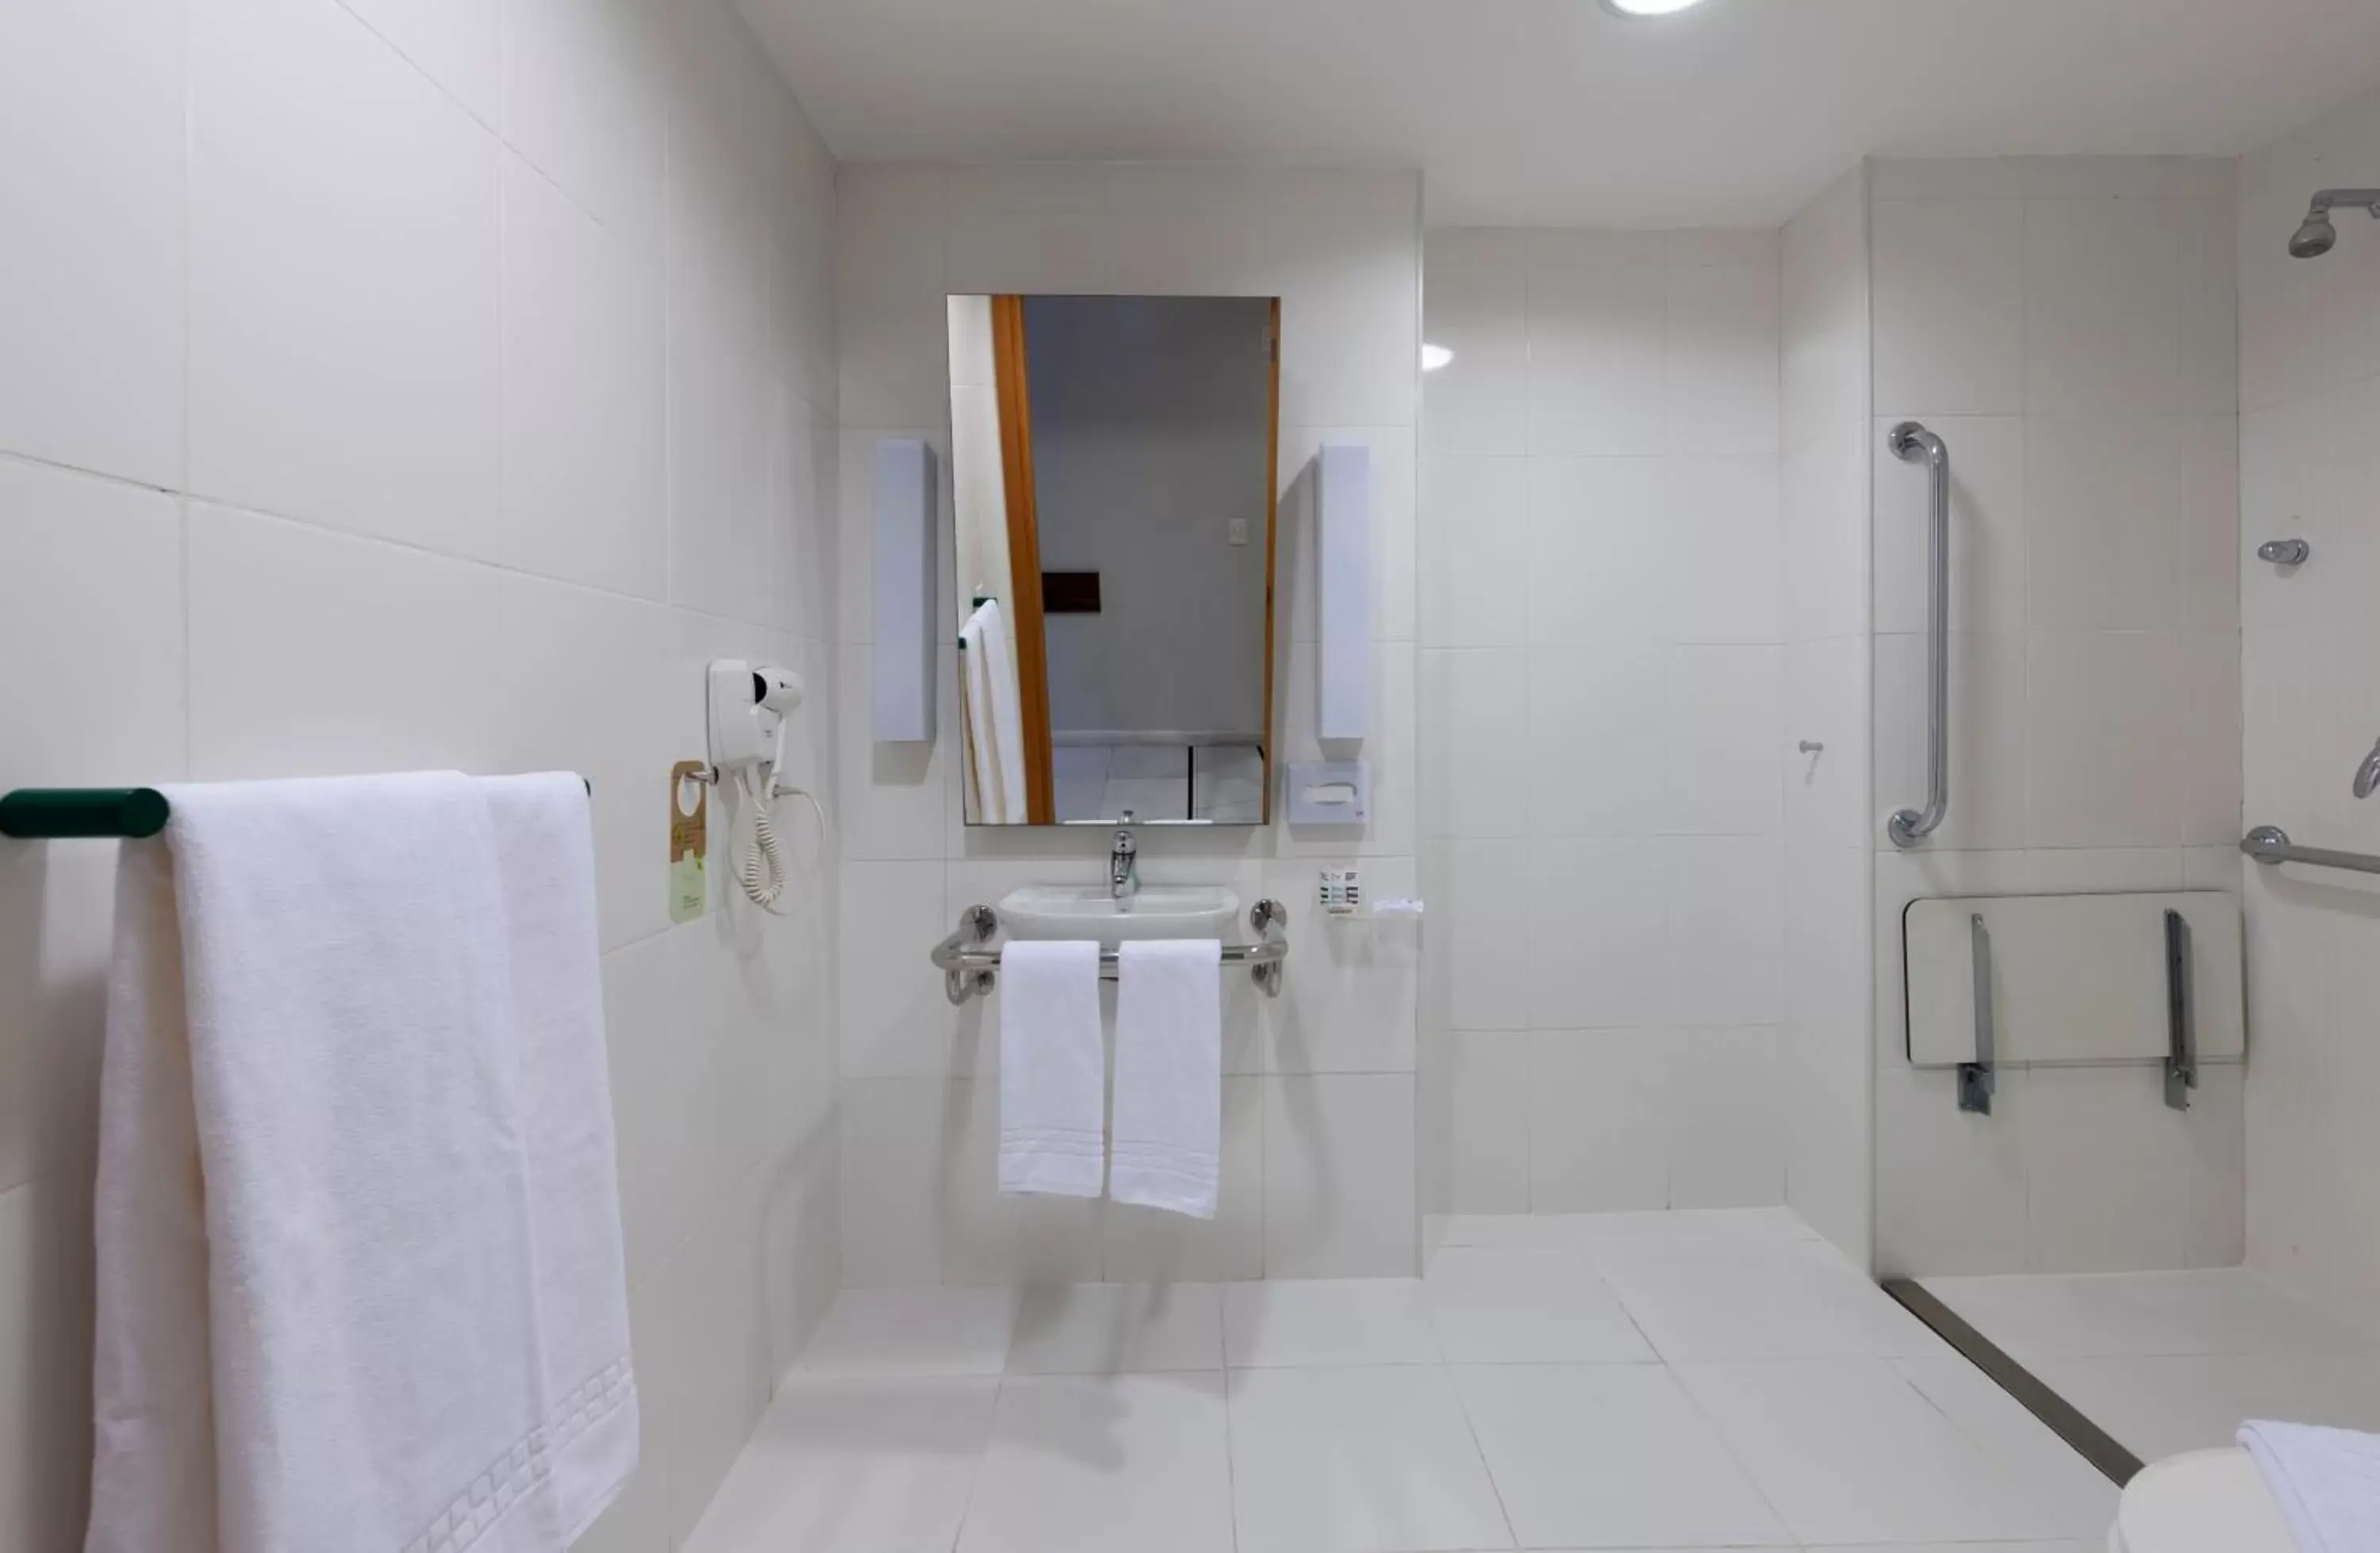 Facility for disabled guests, Bathroom in Mercure Rio de Janeiro Nova Iguaçu